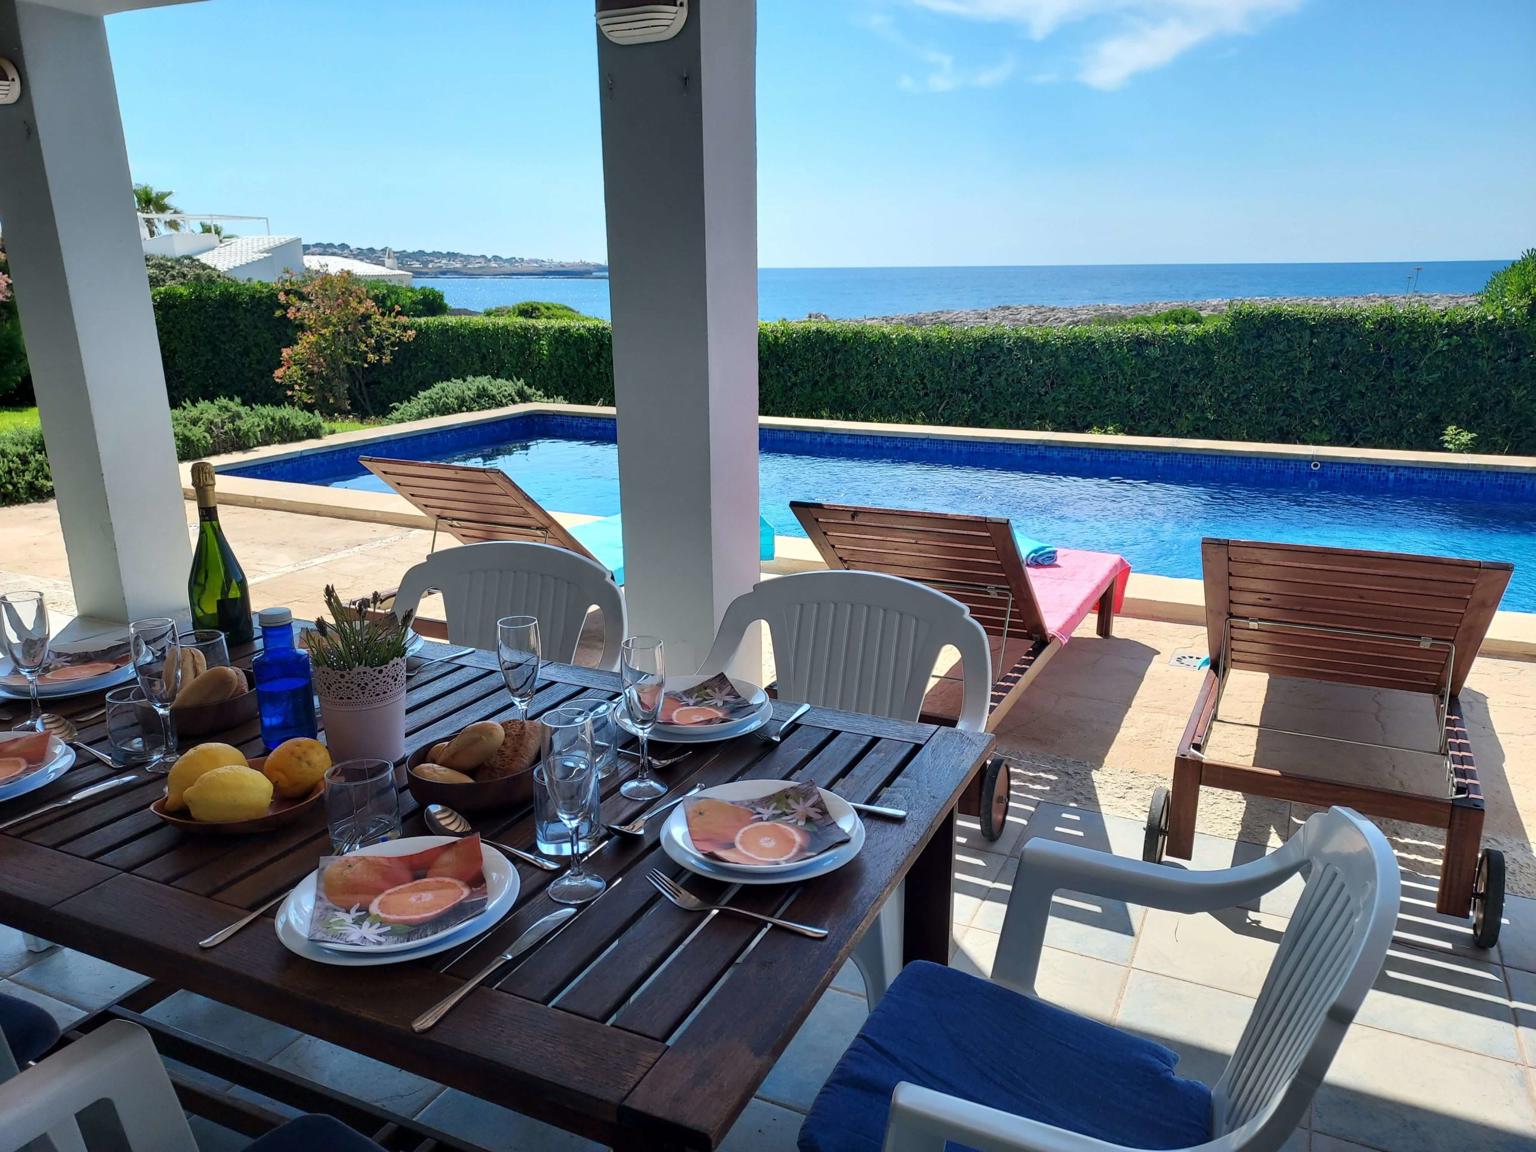 Villa Blau Mari - zona del porche exterior con vistas a la piscina y al mar - Chalet con piscina - Cap den Font - Sant Lluis - Menorca